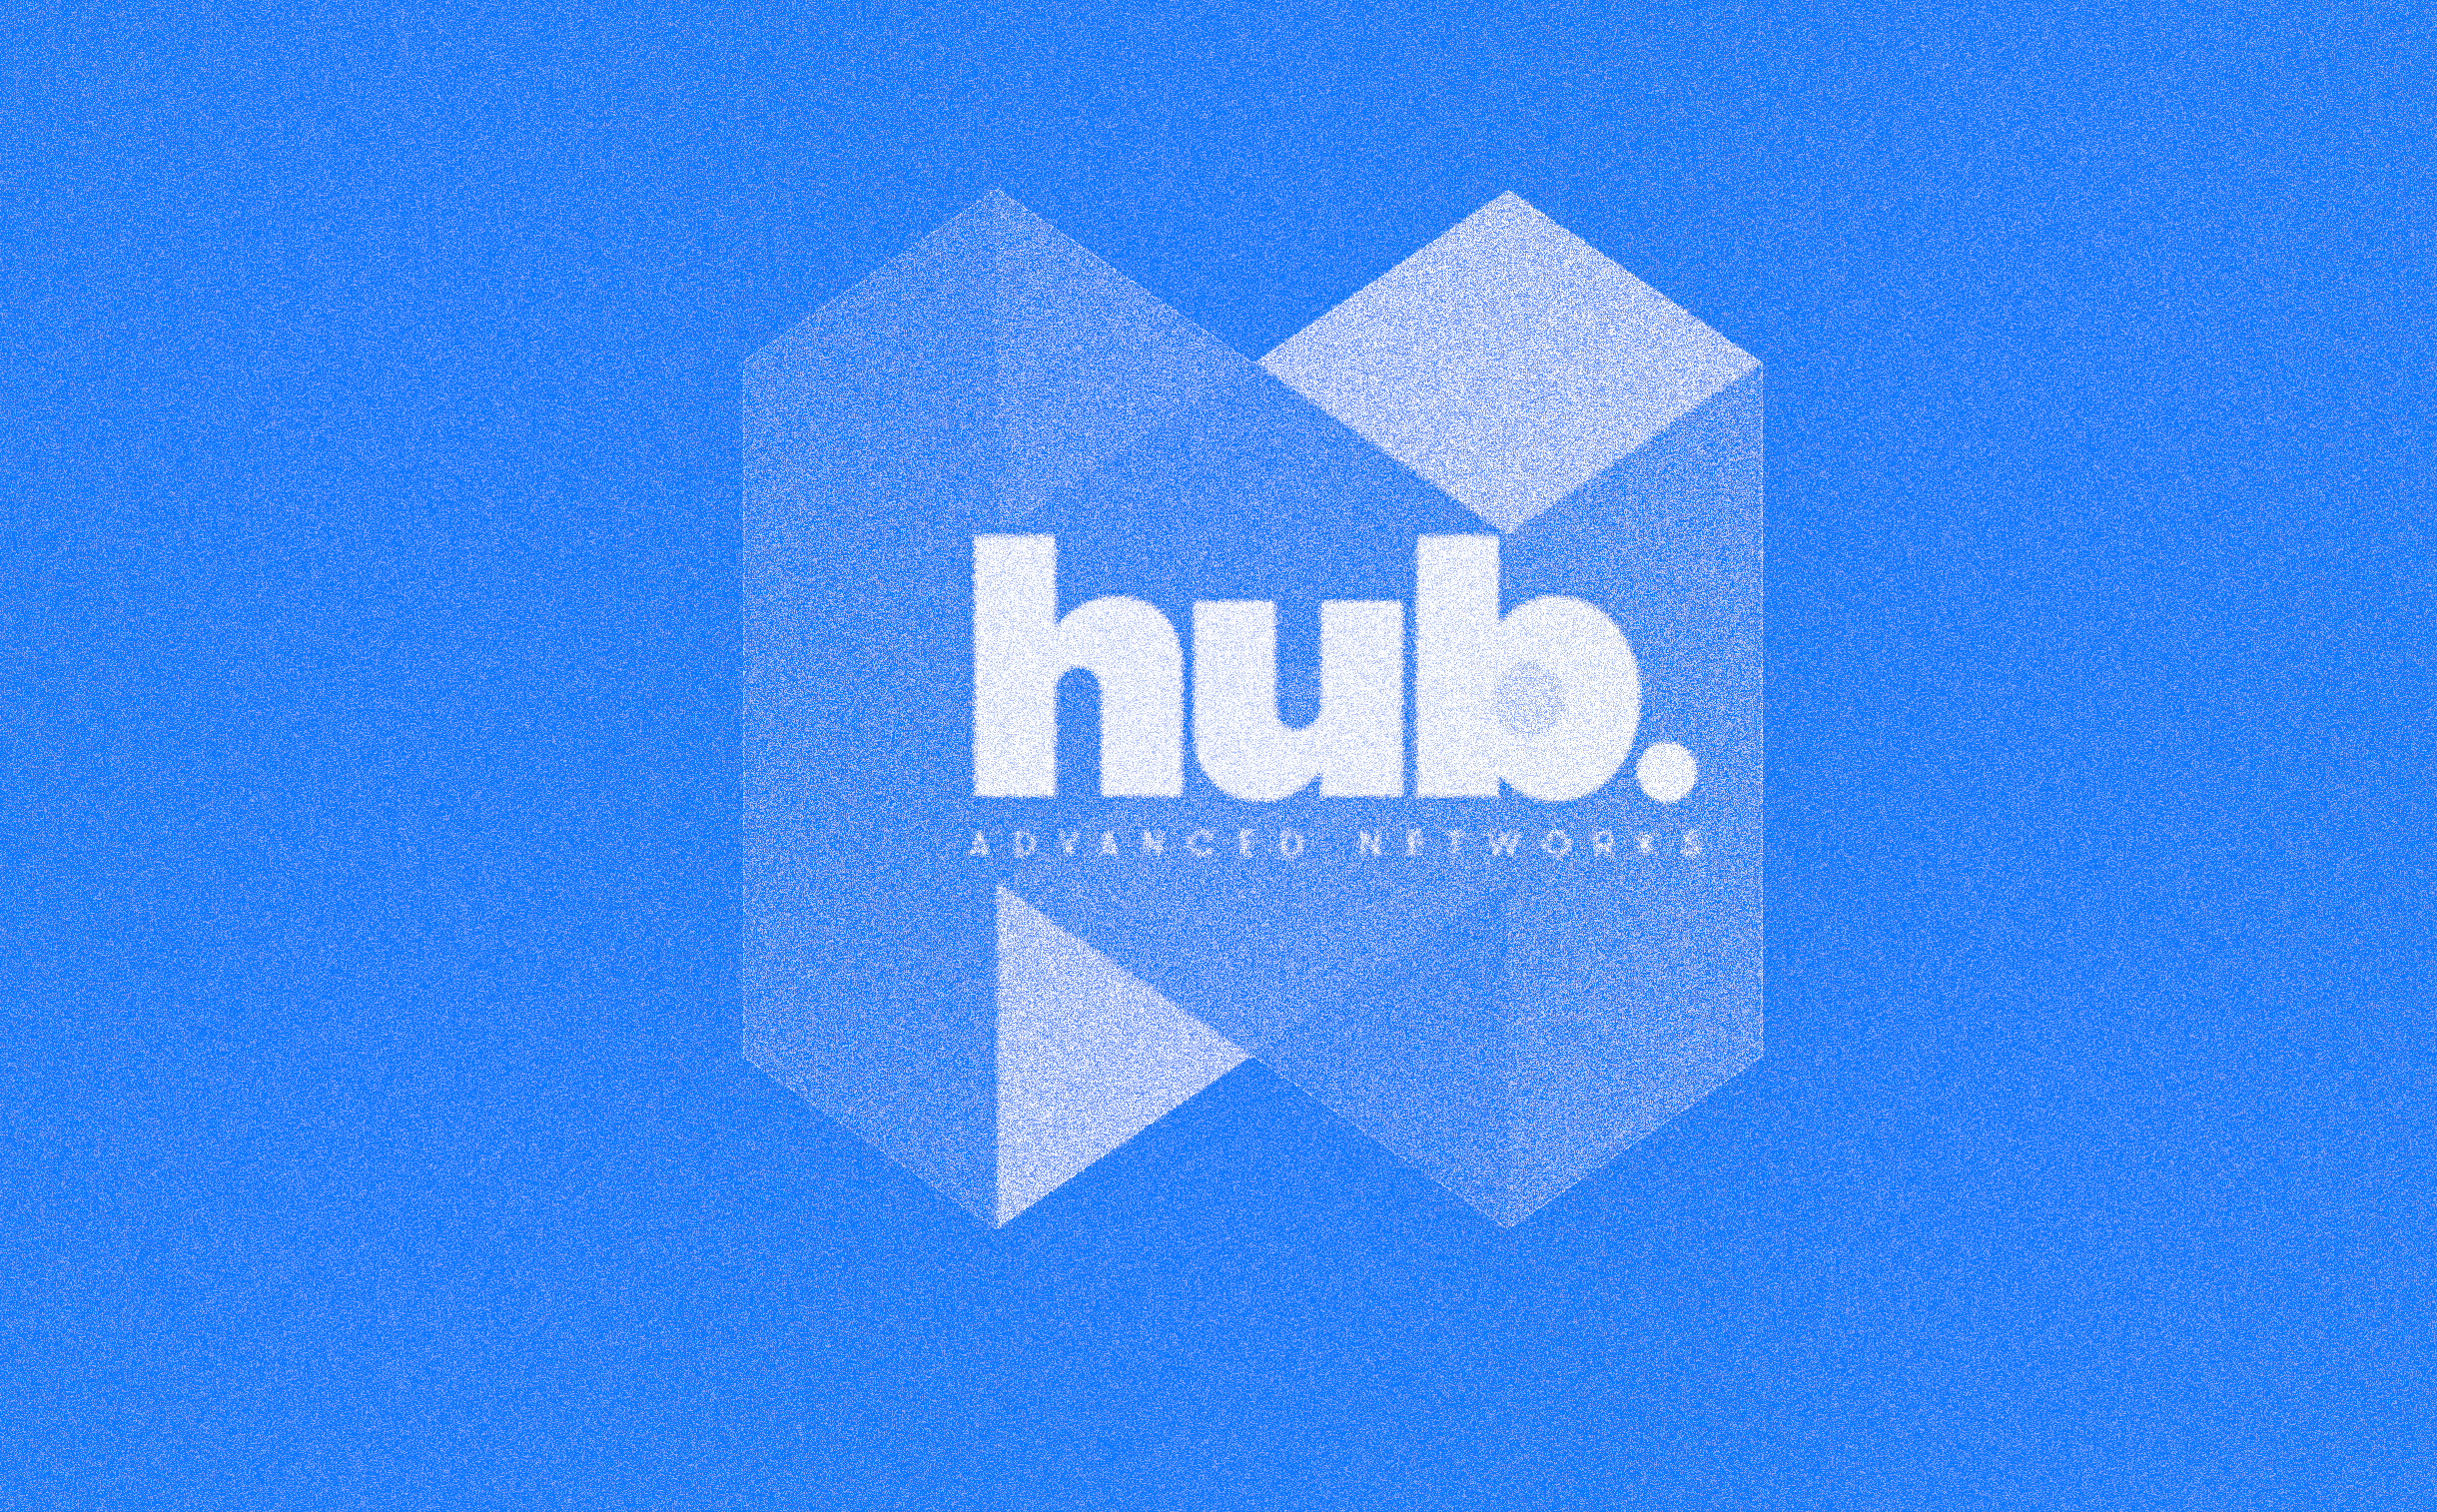 Hub Advanced Networks logo.